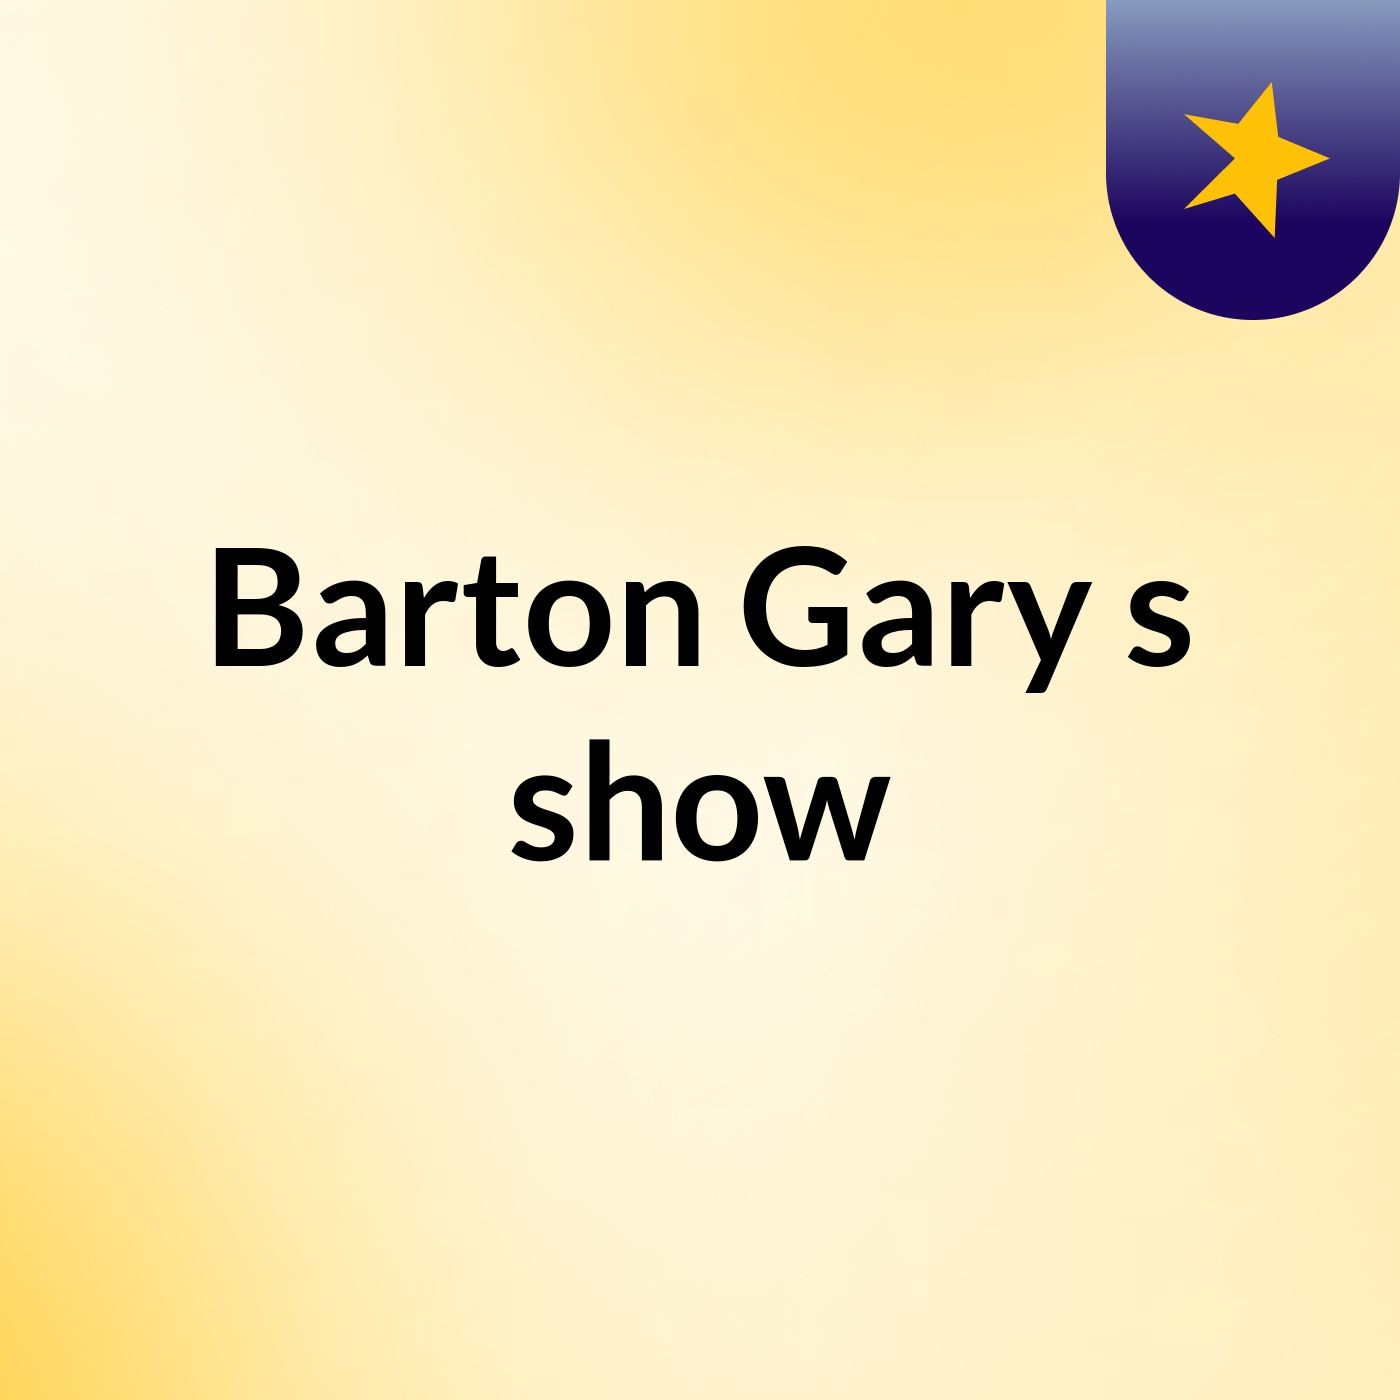 Episode 10 - Barton Gary's show